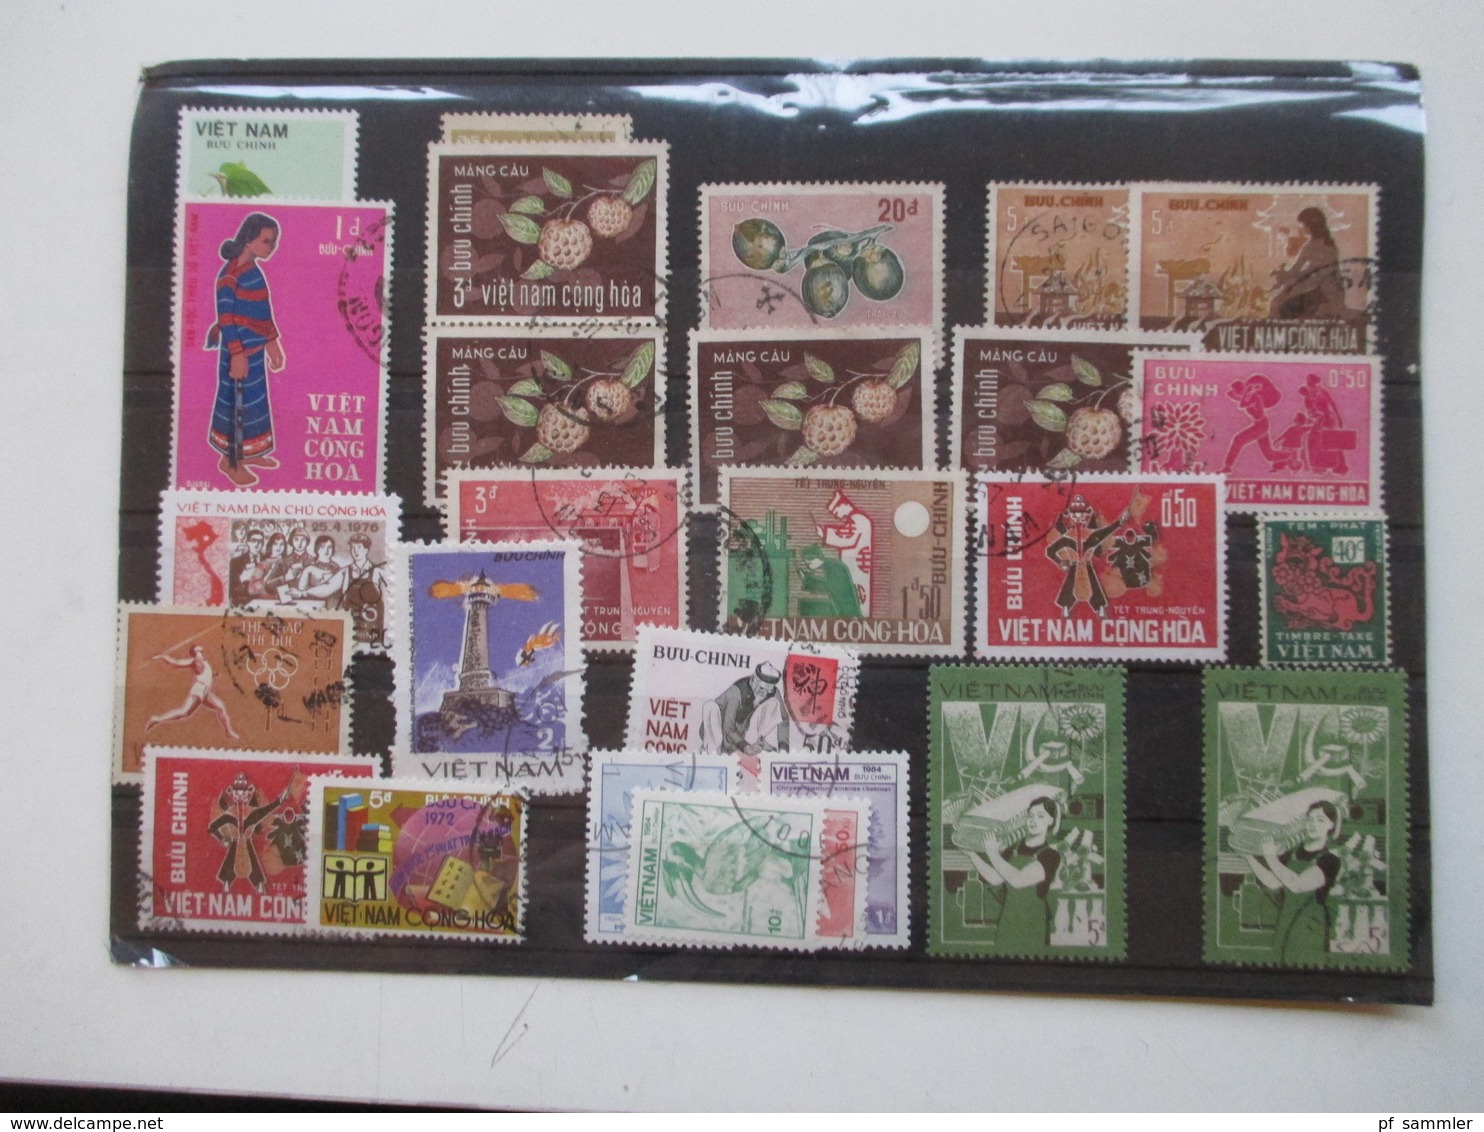 Vietnam hunderte gestempelte Marken auf 23 Steckkarten! 1960er -90er Jahre! Auch 3 Blocks /viele tolle Motive! Fundgrube